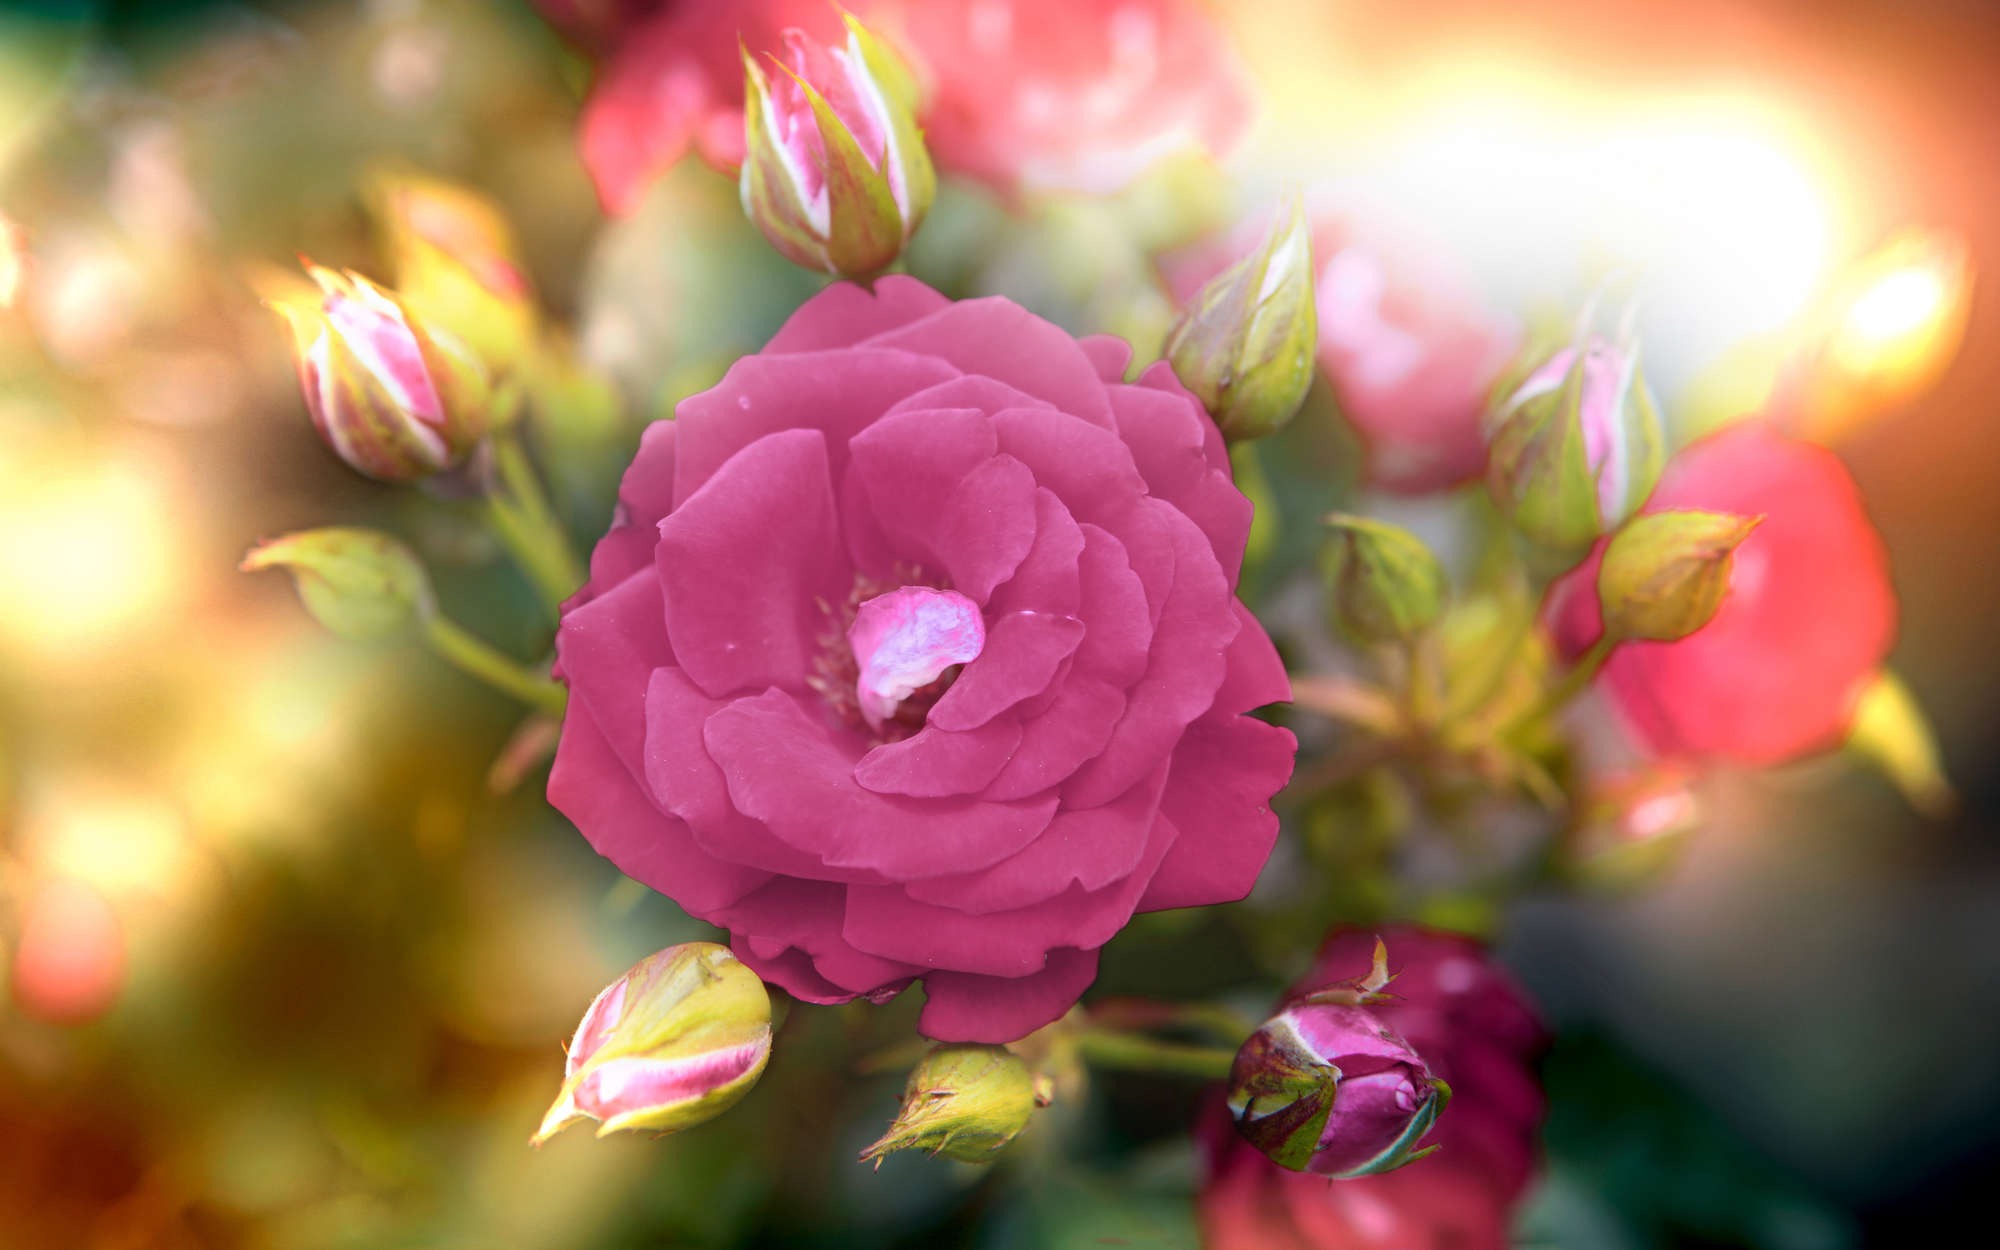             Digital behang Bloem met bloesem in roze - Premium glad vlies
        